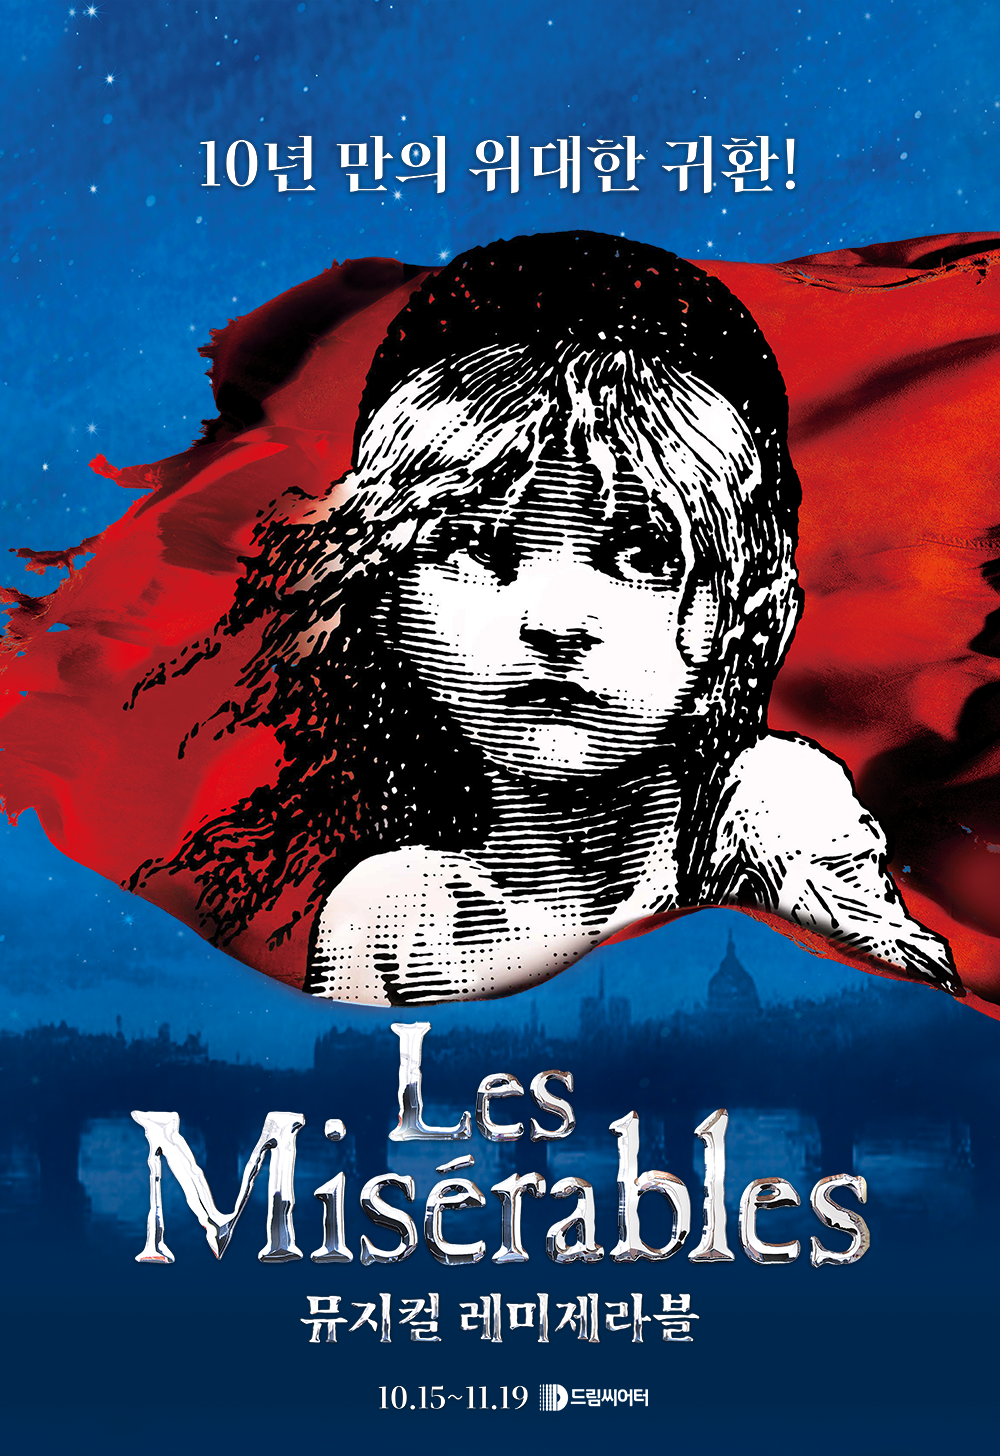 10년 만의 위대한 귀환! Les Misérables 뮤지컬 레미제라블 10월 15일~11월 19일 드림씨어터